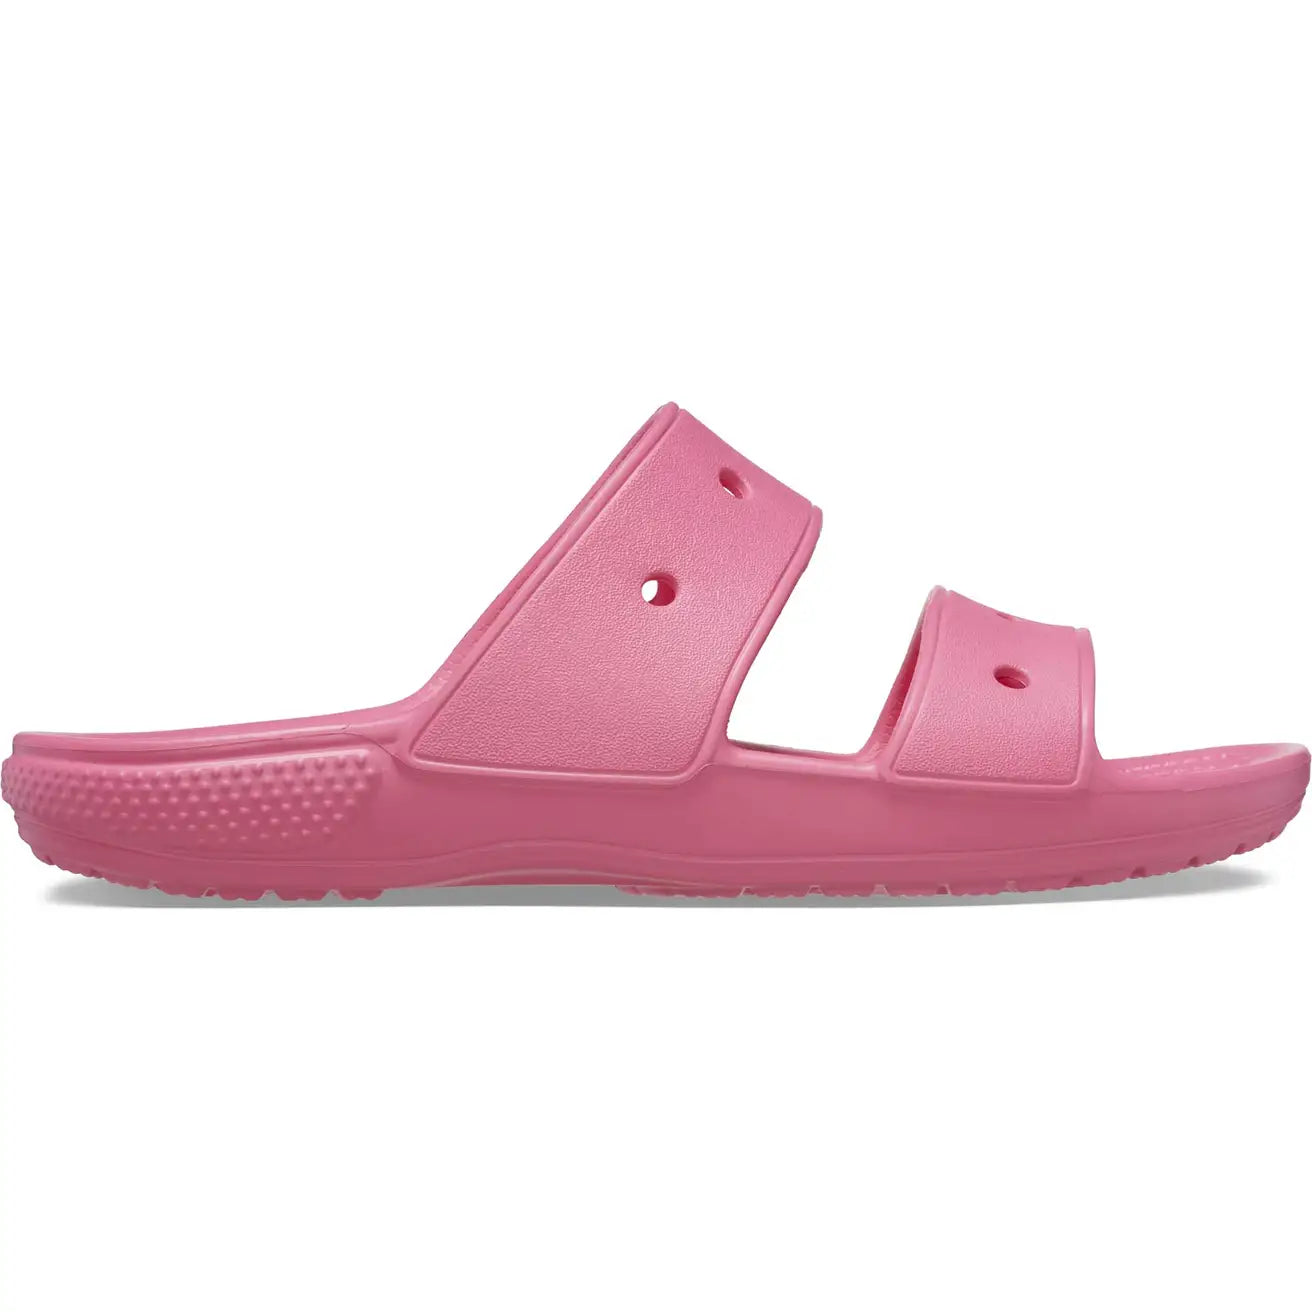 Classic Crocs Sandal - shoe&amp;me - Crocs - Slide - Sandals, Slides/Scuffs, Summer, Unisex